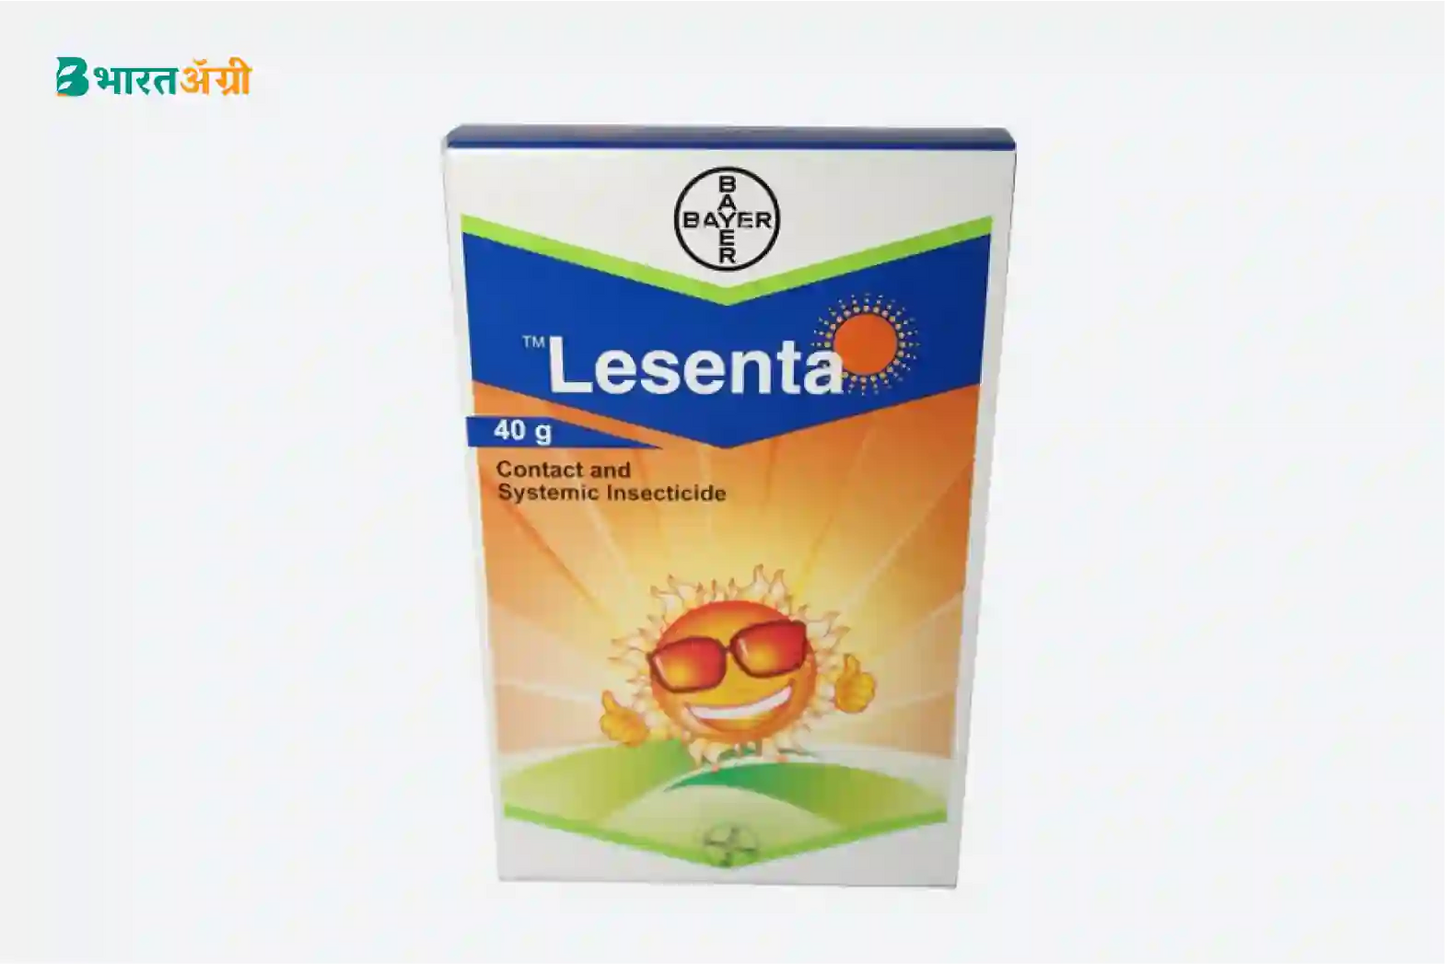 Buy Bayer Lesenta Online | Buy Imidacloprid 40% + Fipronil 40% Online